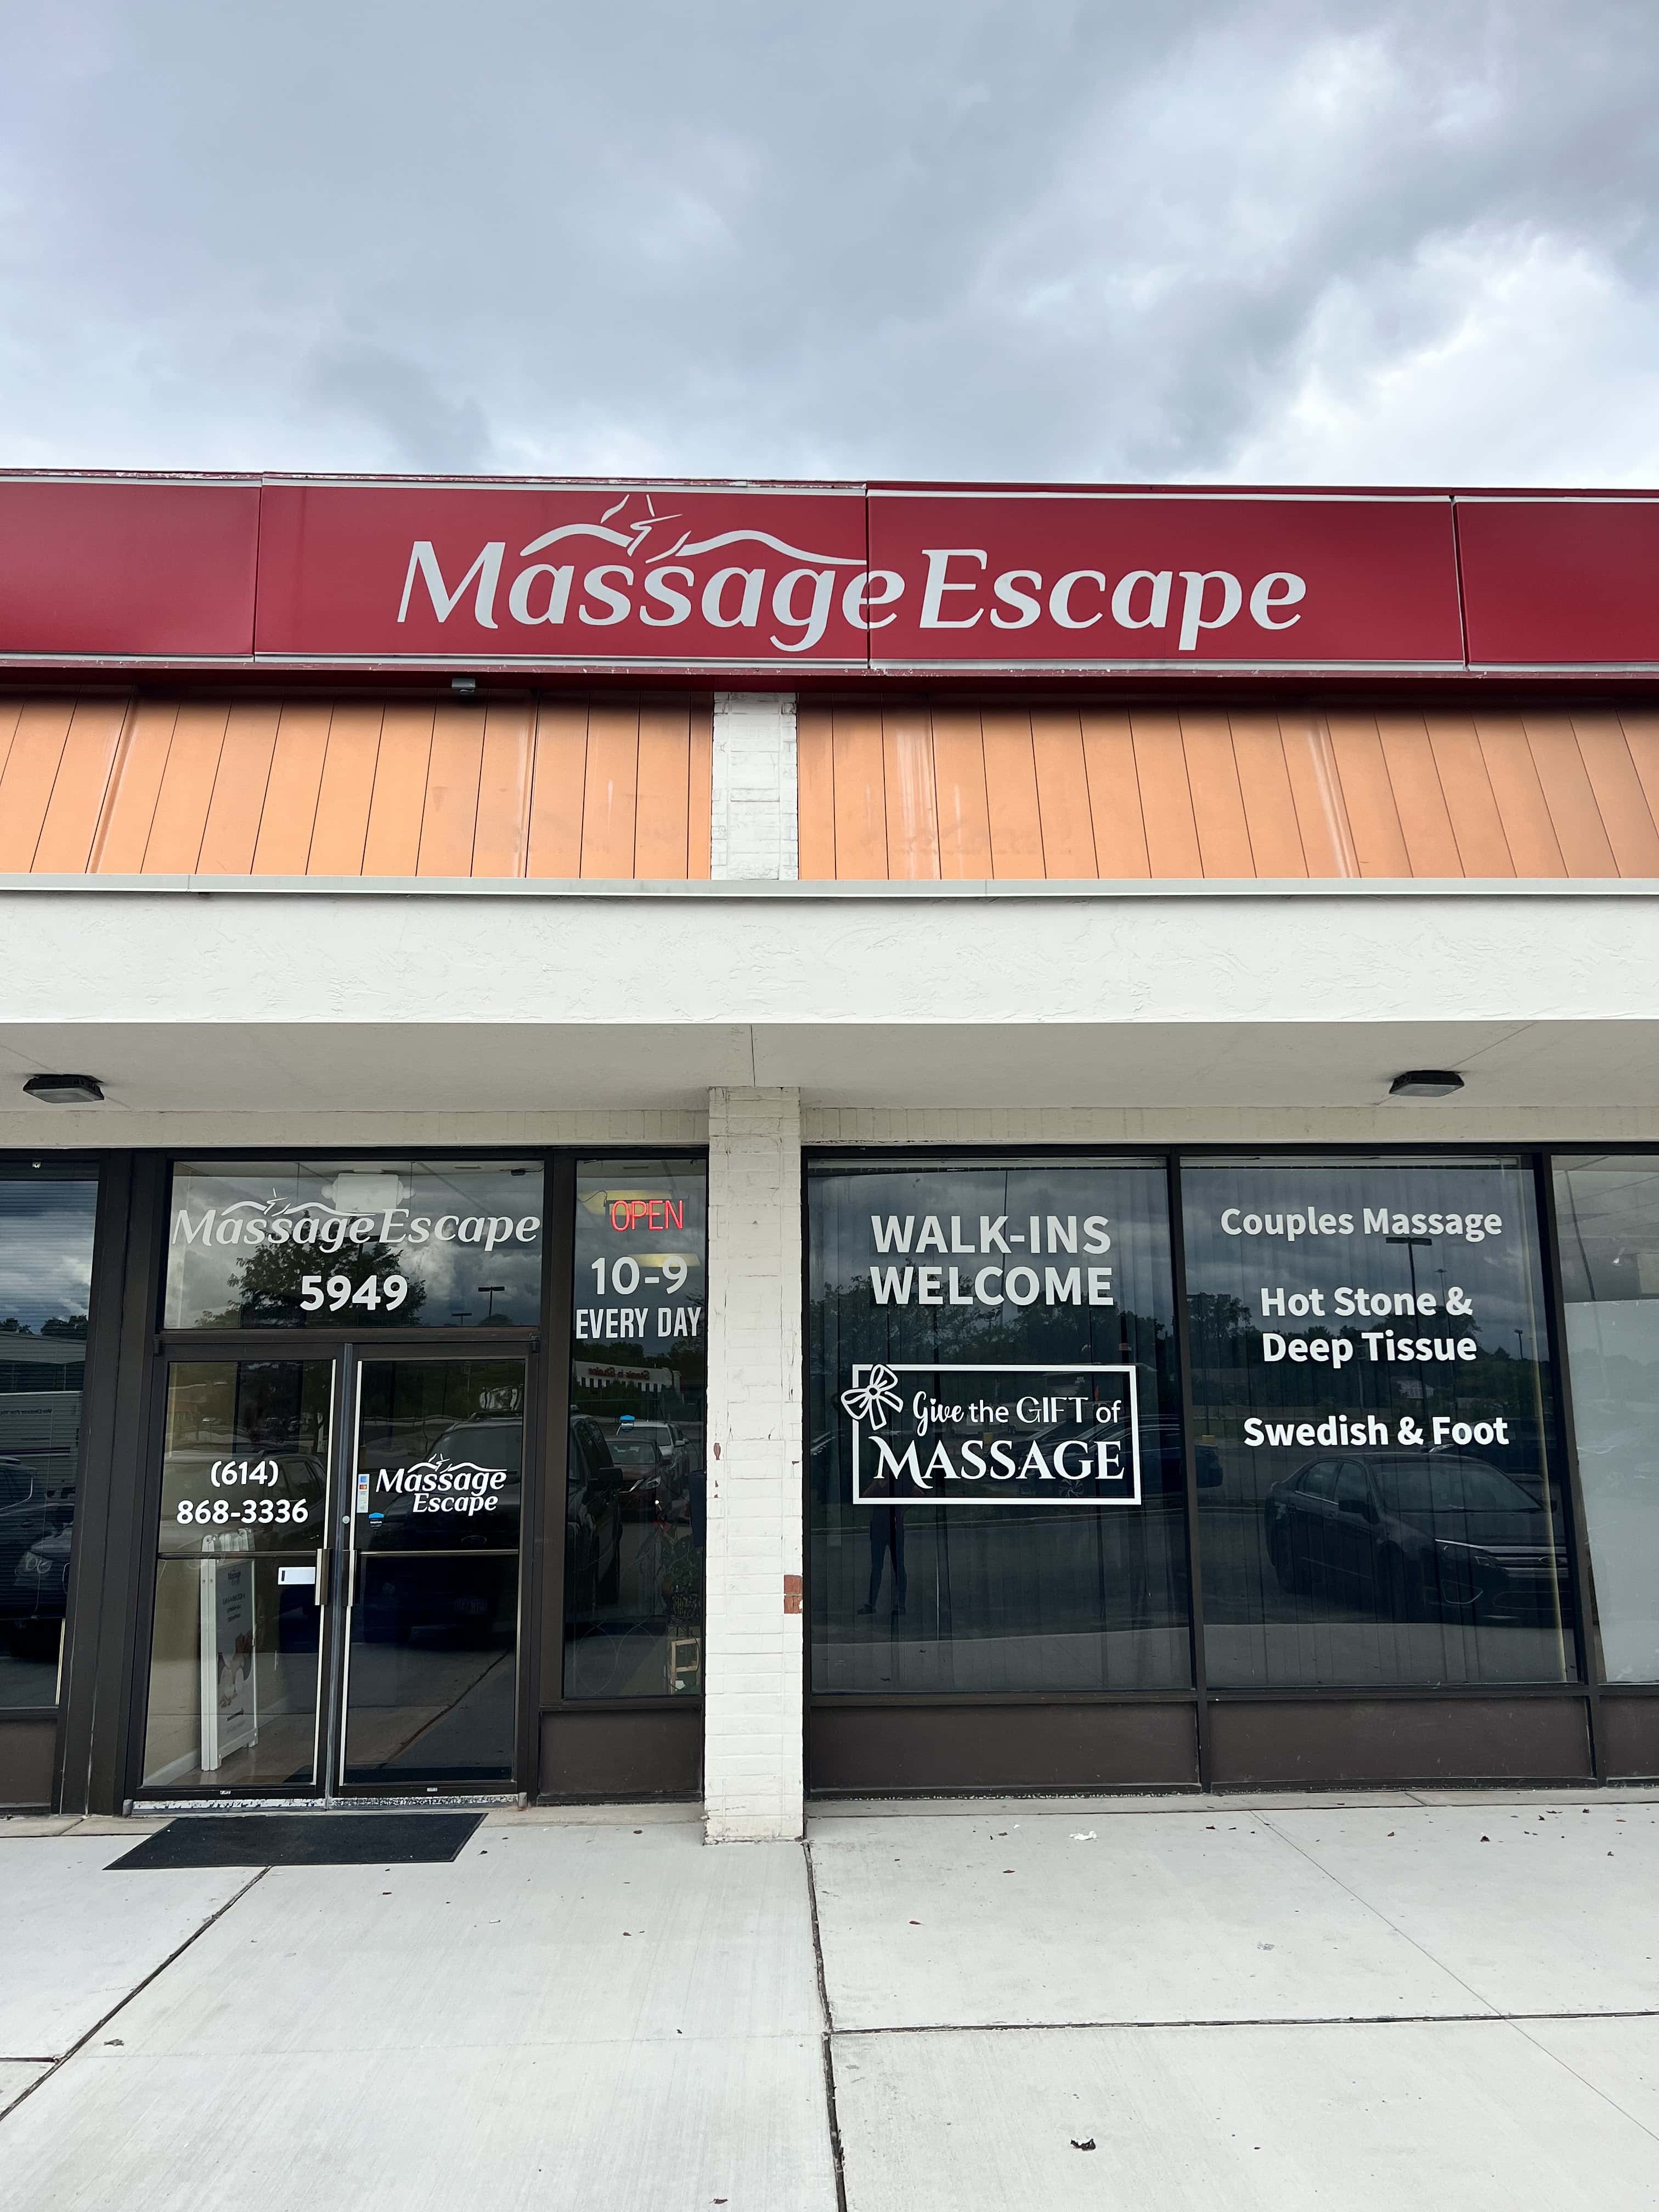 Massage Escape Columbus, US, near me massage